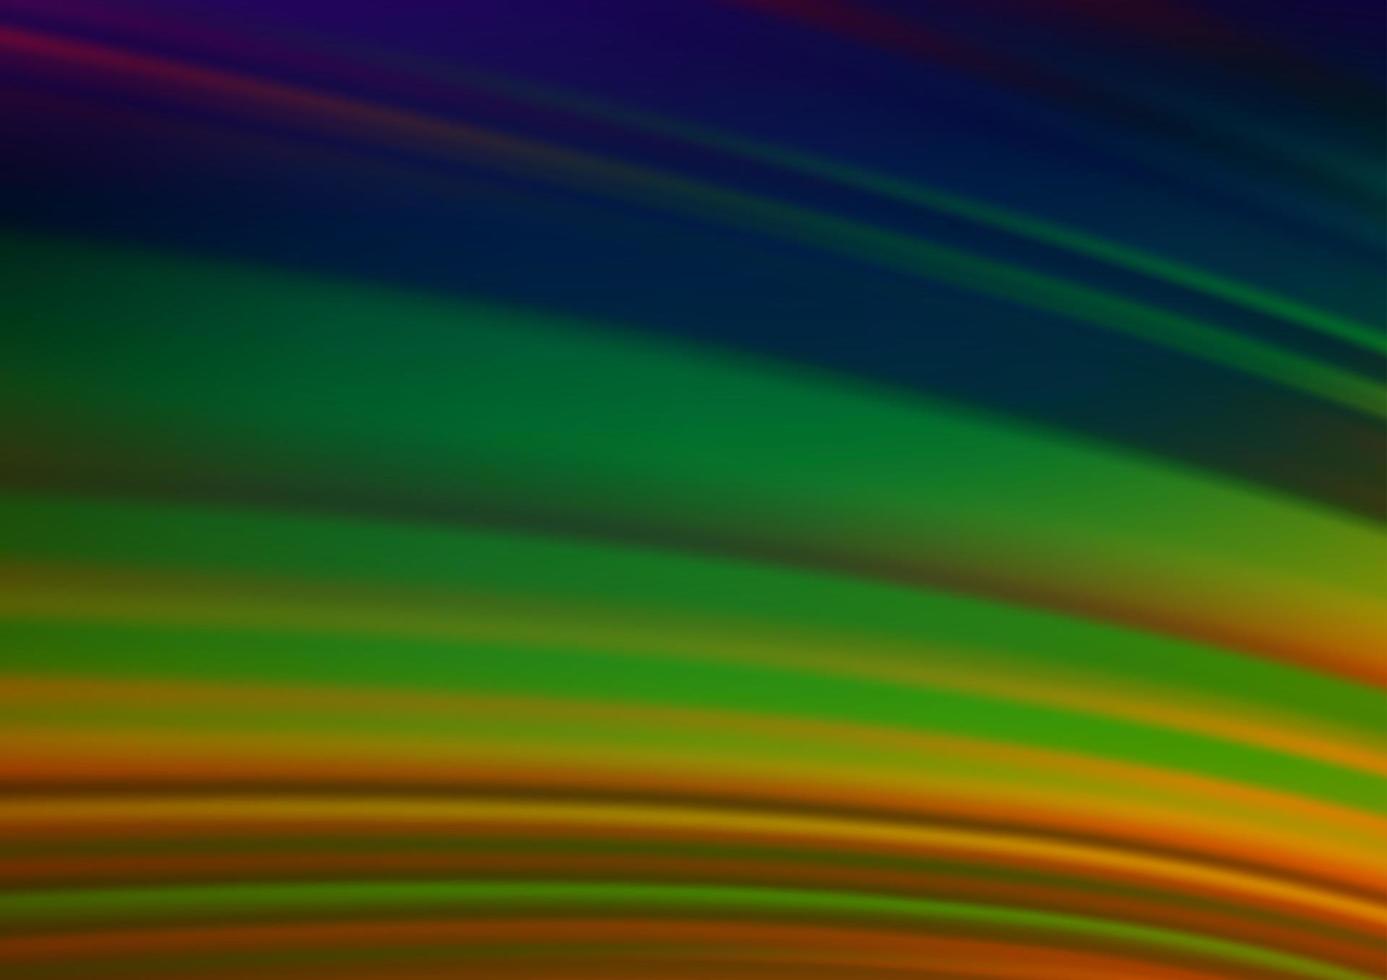 multicolor escuro, abstrato do vetor do arco-íris fundo desfocado.